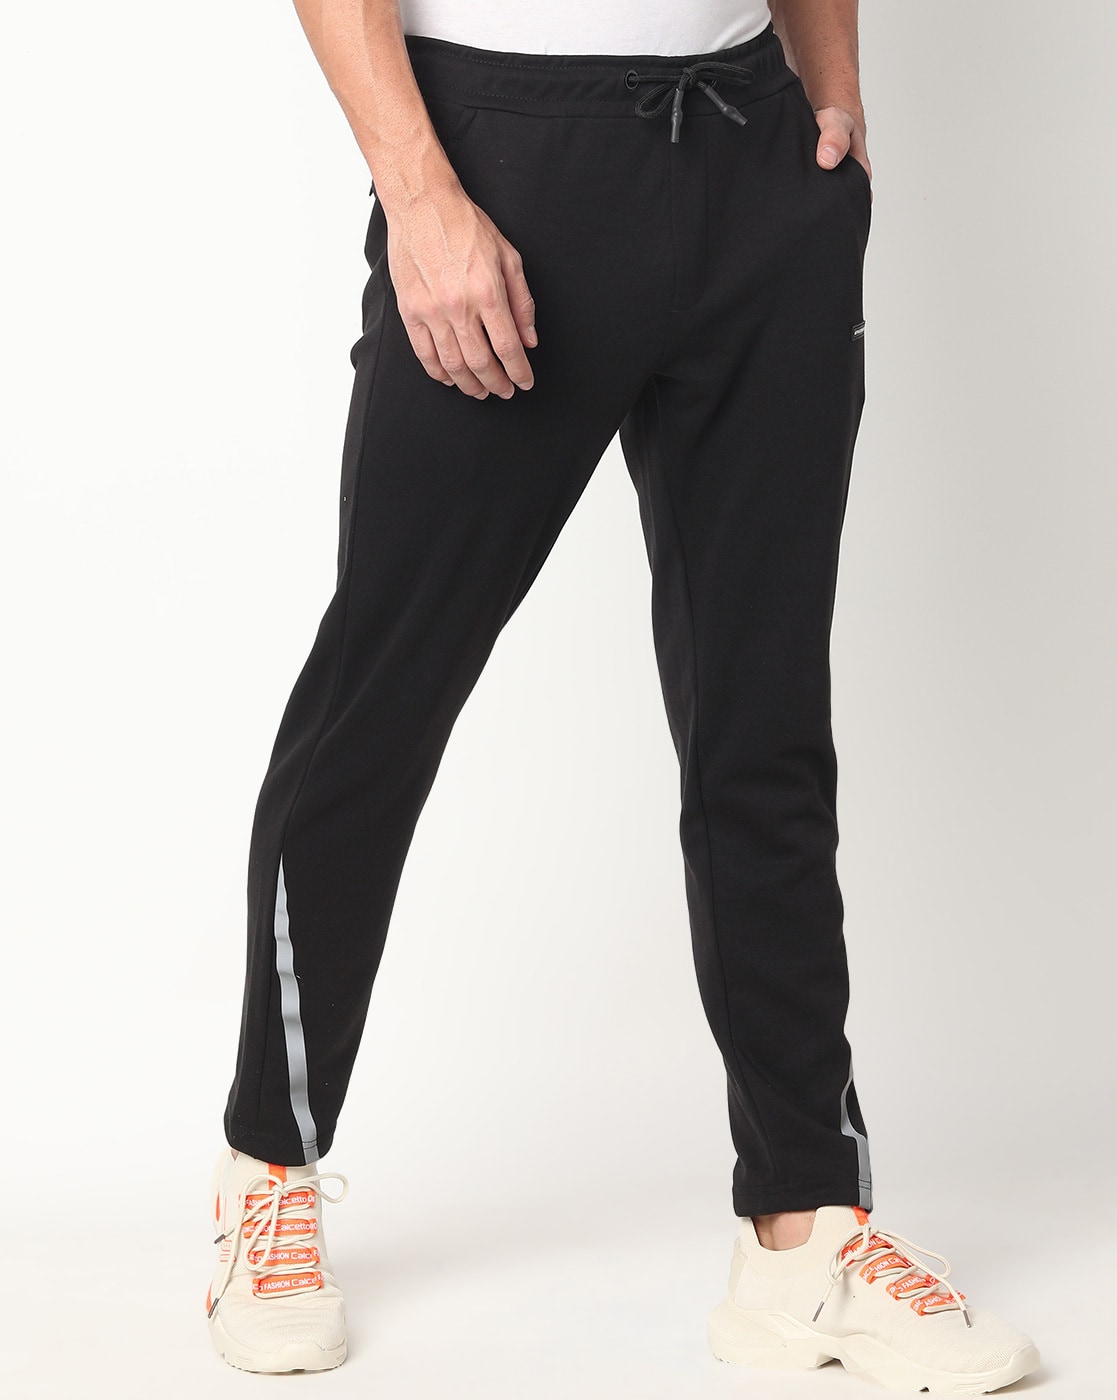 Buy Black Track Pants for Women by Teamspirit Online